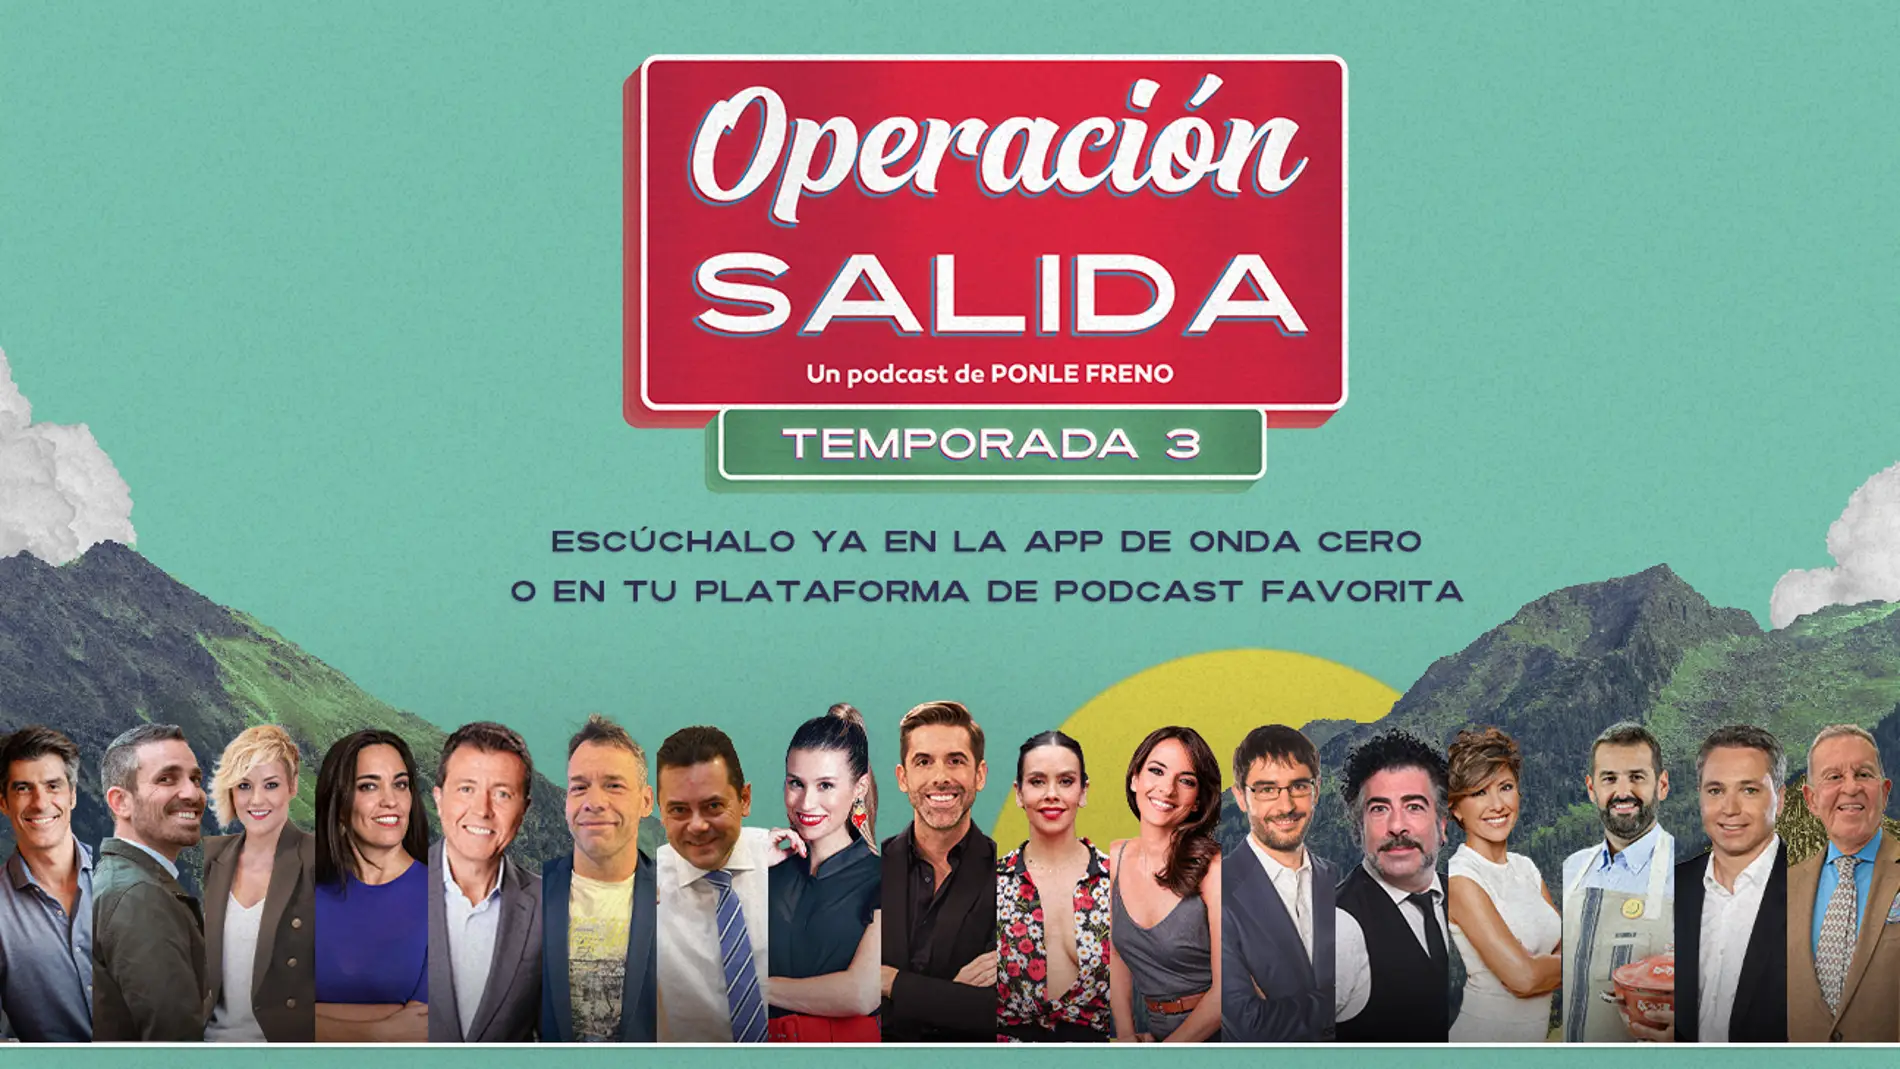 Ponle Freno vuelve a acompañar a los conductores con su podcast ‘Operación Salida’ junto a las voces de Atresmedia 